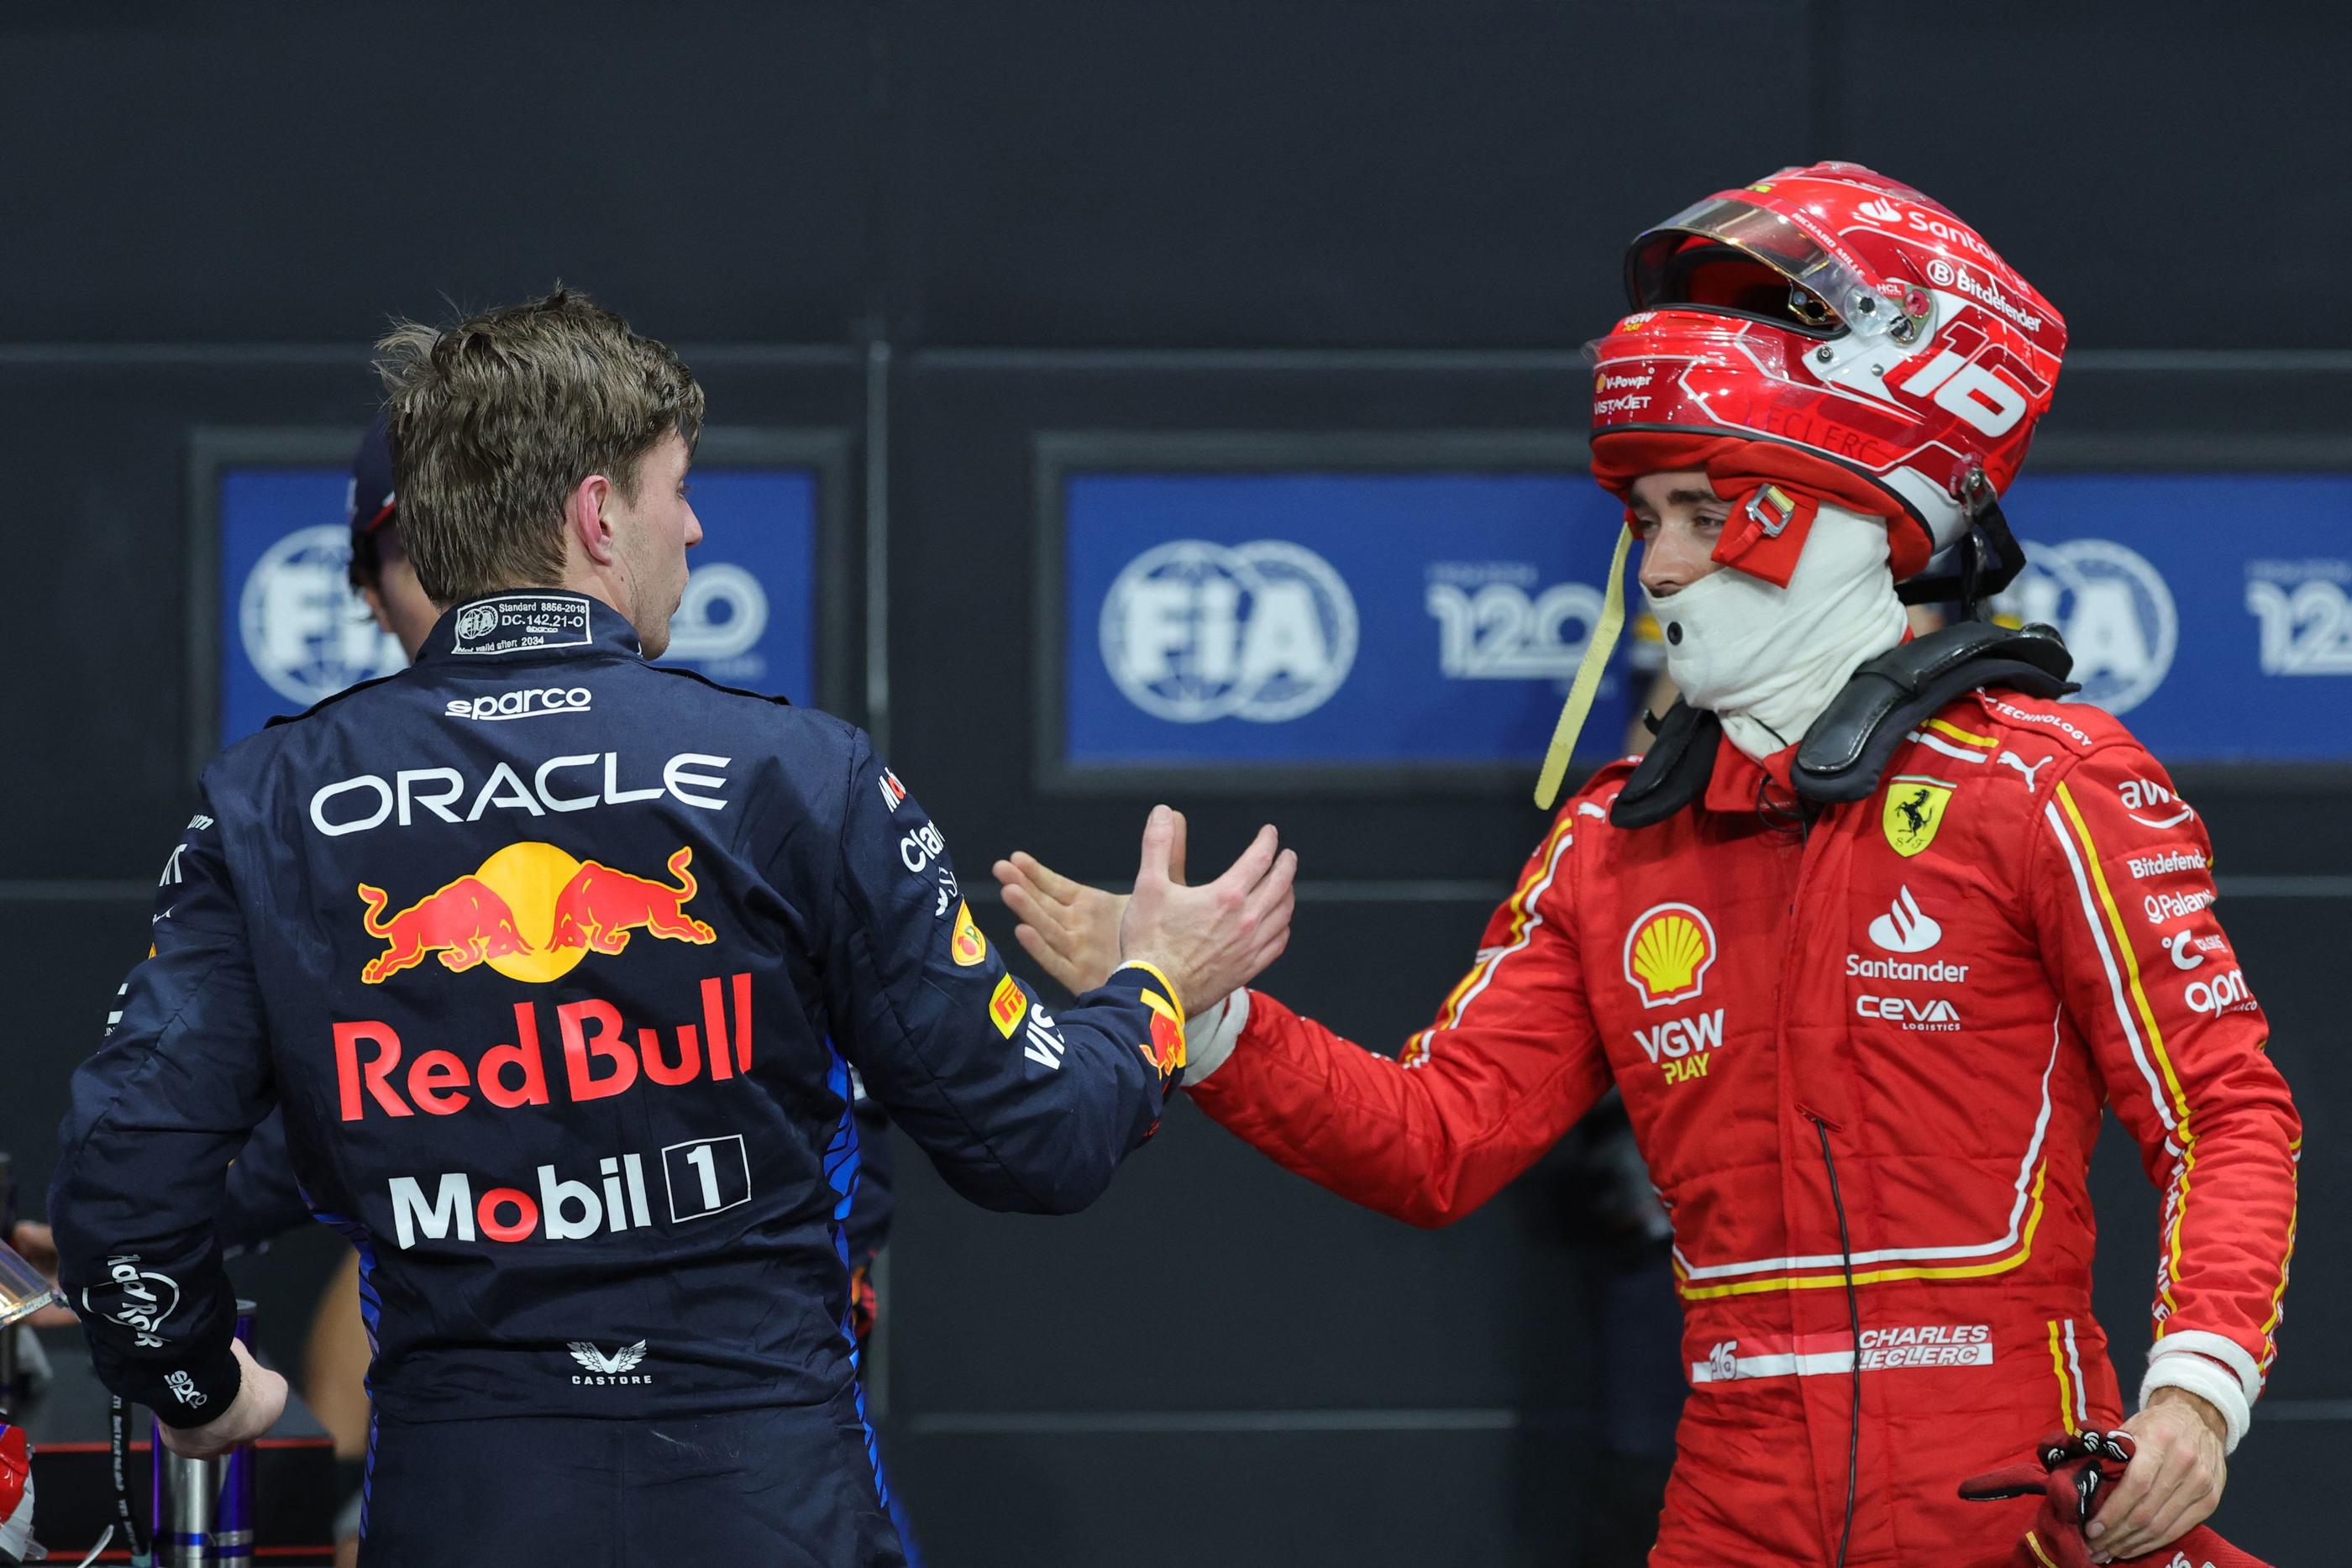 Comme au Bahrein, Max Verstappen (Red Bull) et Charles Leclerc (Ferrari) s'élanceront aux deux premières positions du GP d'Arabie saoudite. AFP/Giuseppe Cacace